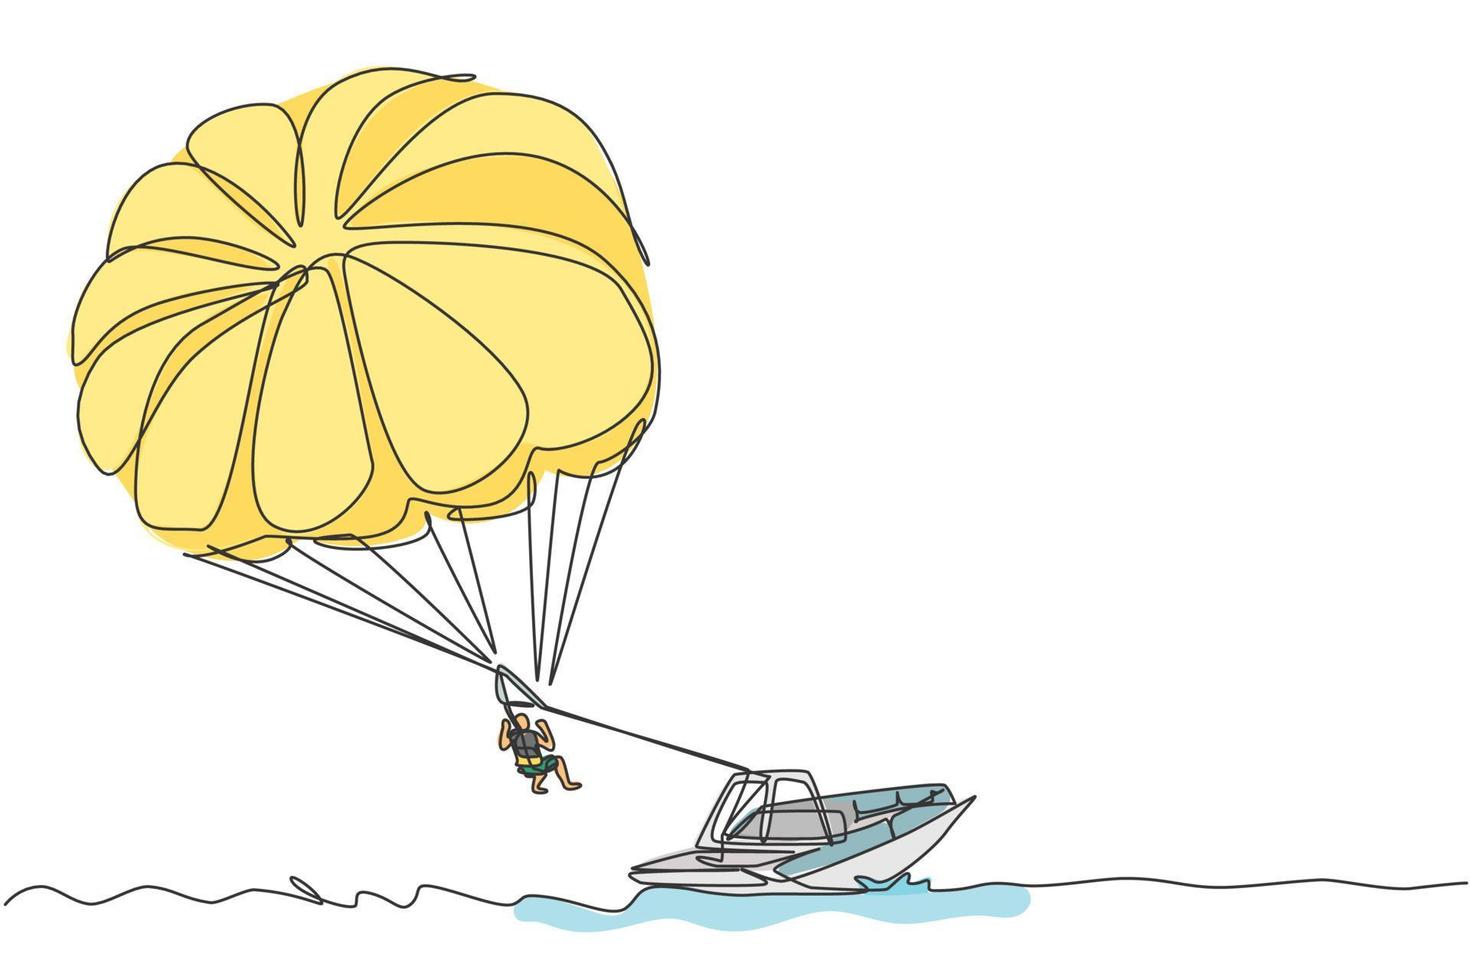 un disegno a linea continua di un giovane coraggio che vola nel cielo usando il paracadute da parapendio dietro la barca. concetto di sport estremo pericoloso all'aperto. illustrazione vettoriale dinamica del disegno a linea singola